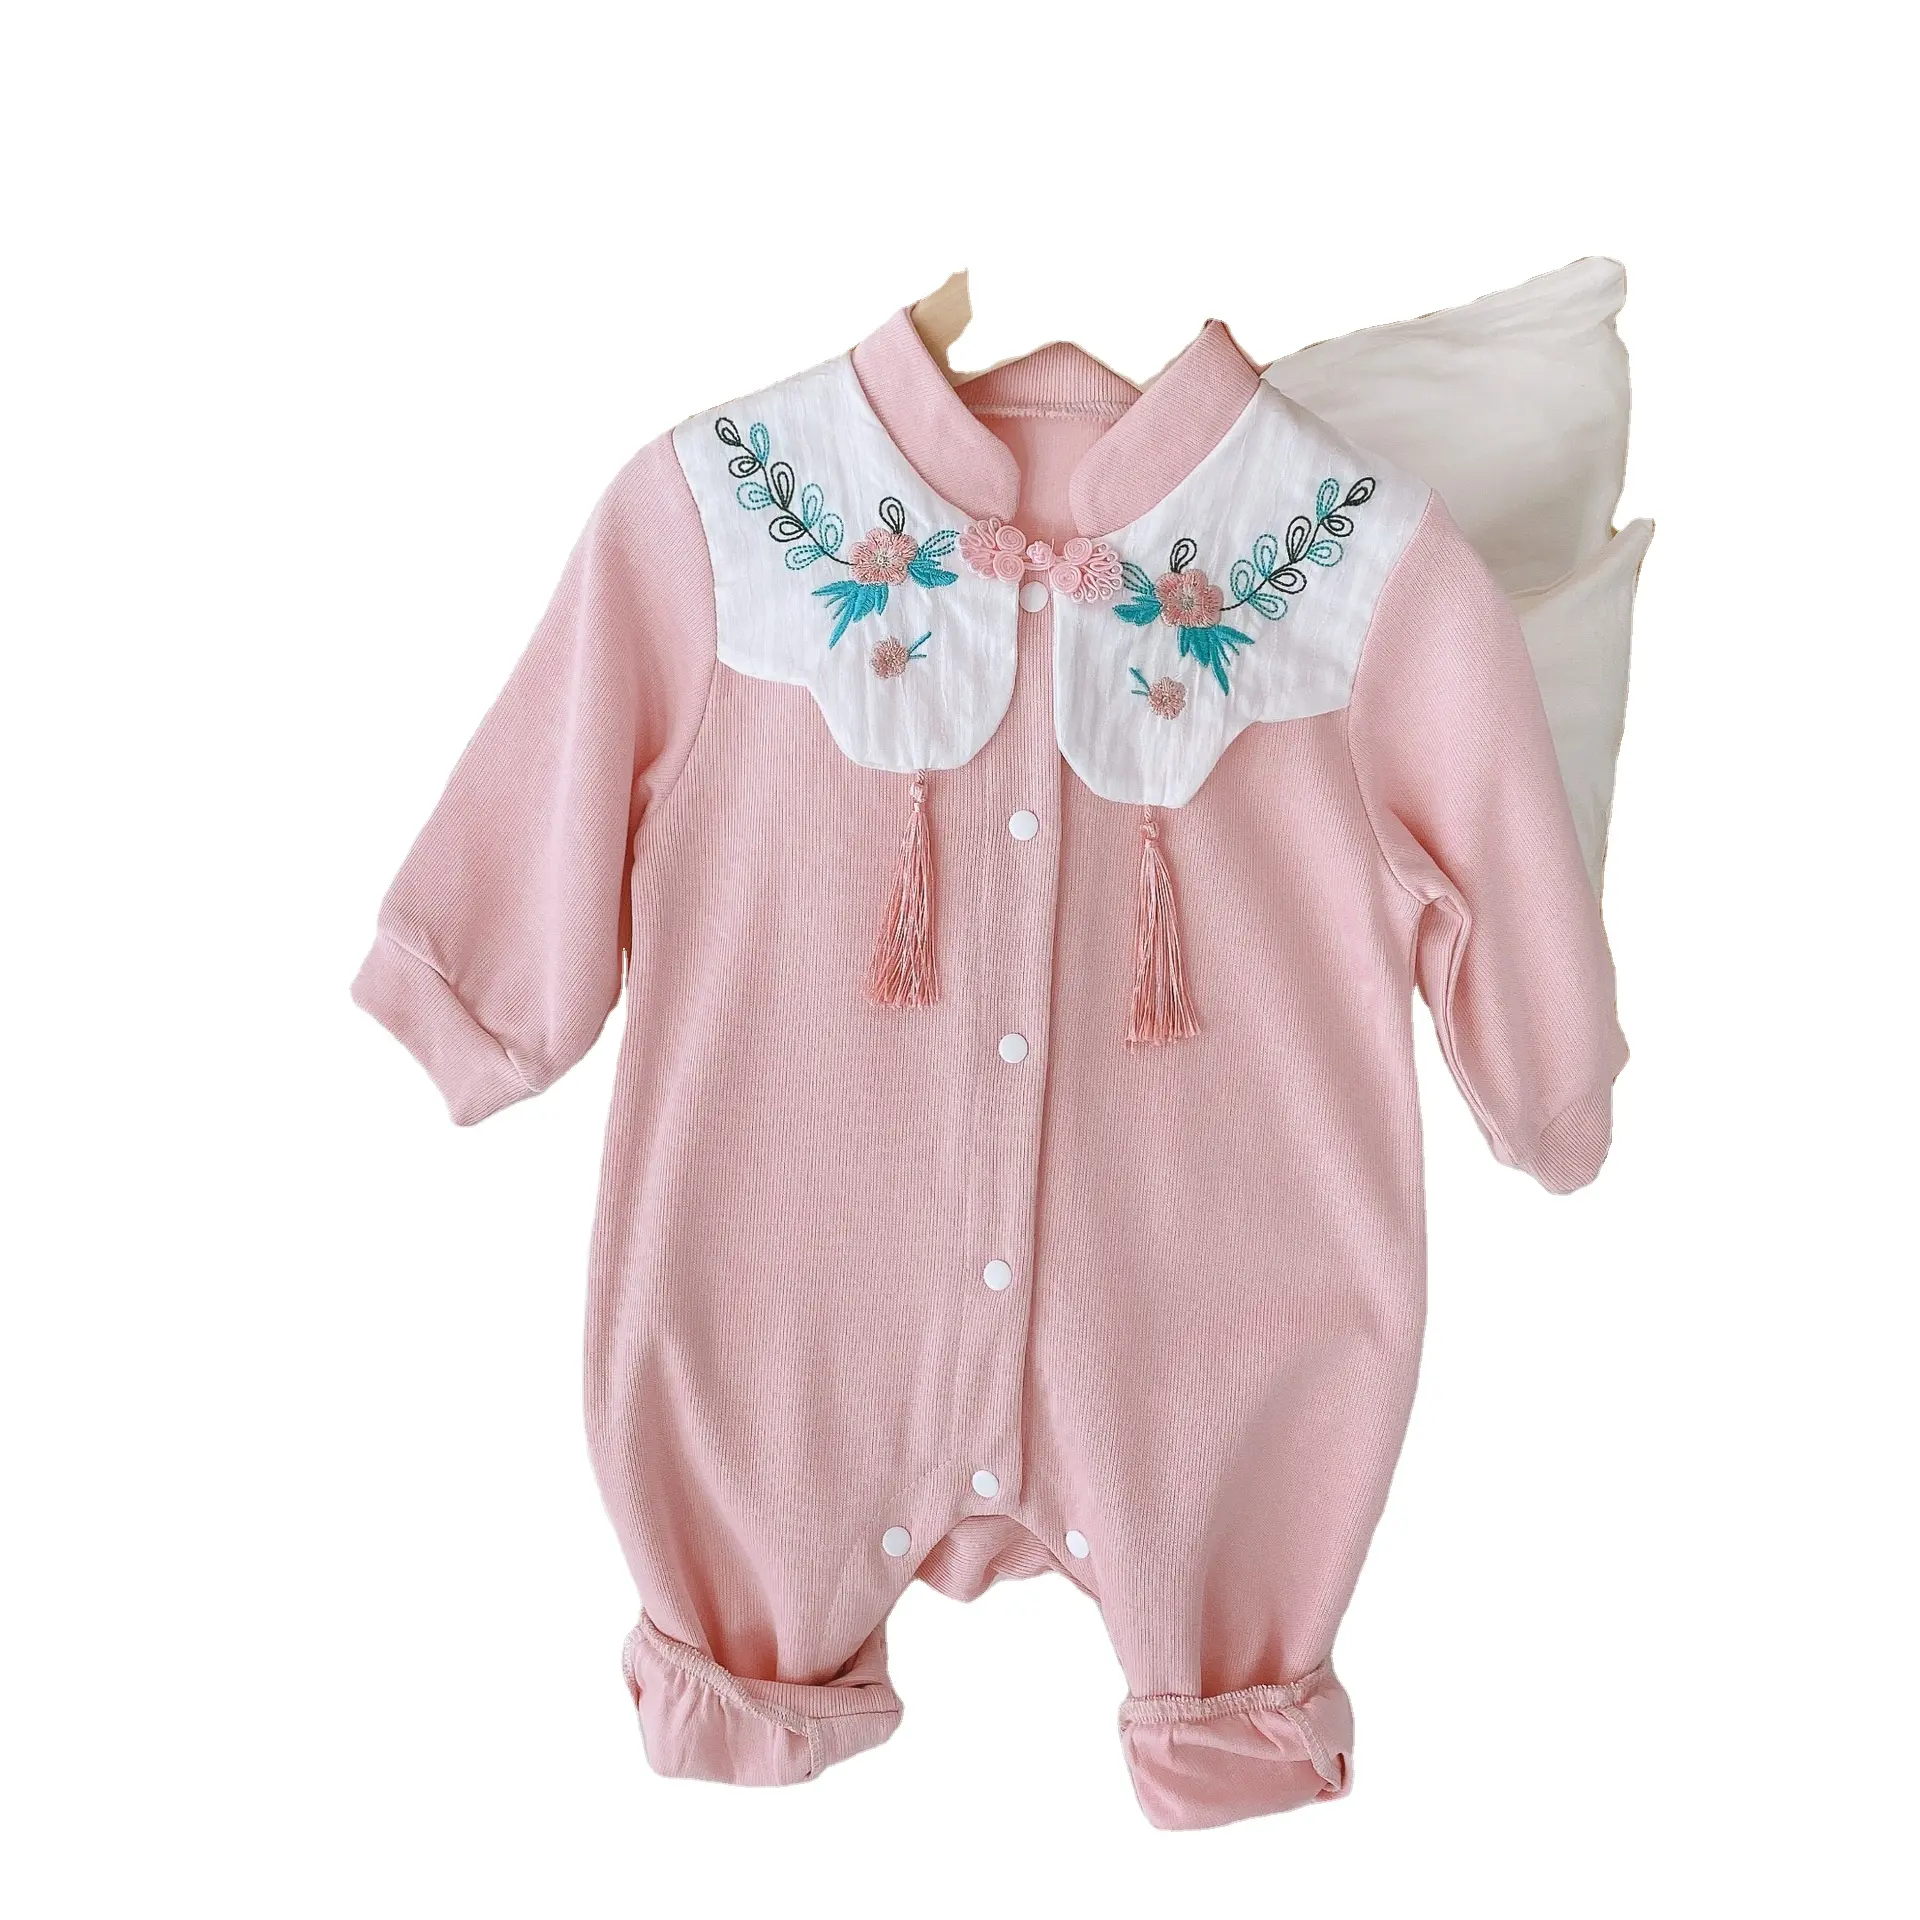 Rts macacão de bebê com franja, bebê de 0-2 anos e menina, estilo chinês, bordado, crianças, floral, roupas de manga longa, outono, 2020